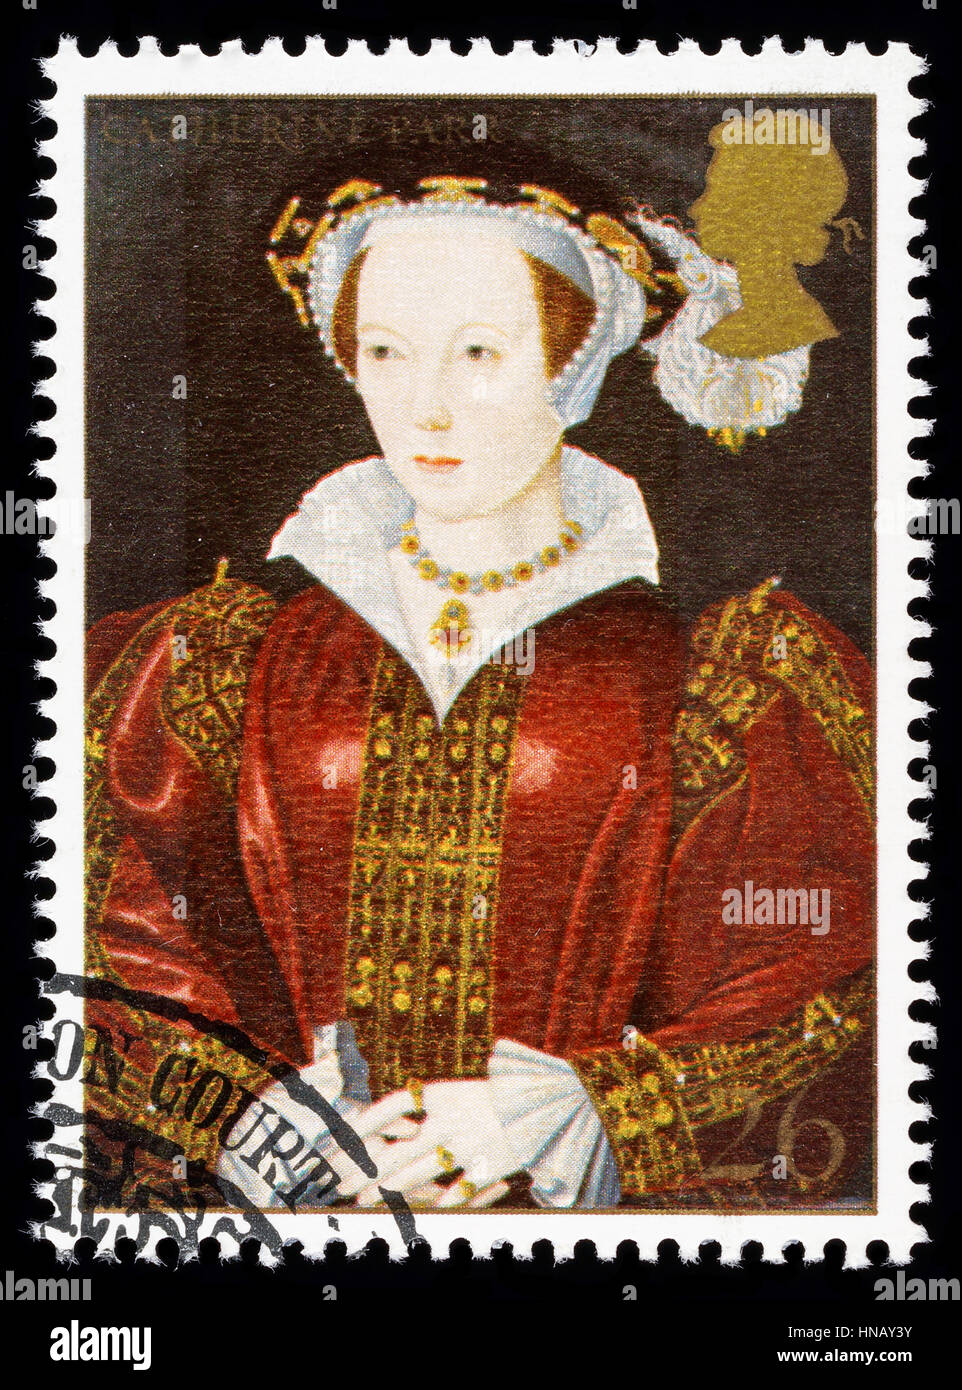 Royaume-uni - circa 1997 : timbre-poste imprimé en Grande-Bretagne commémorant le Roi Henry 8ème montrant Catherine Parr une de ses nombreuses épouses Banque D'Images